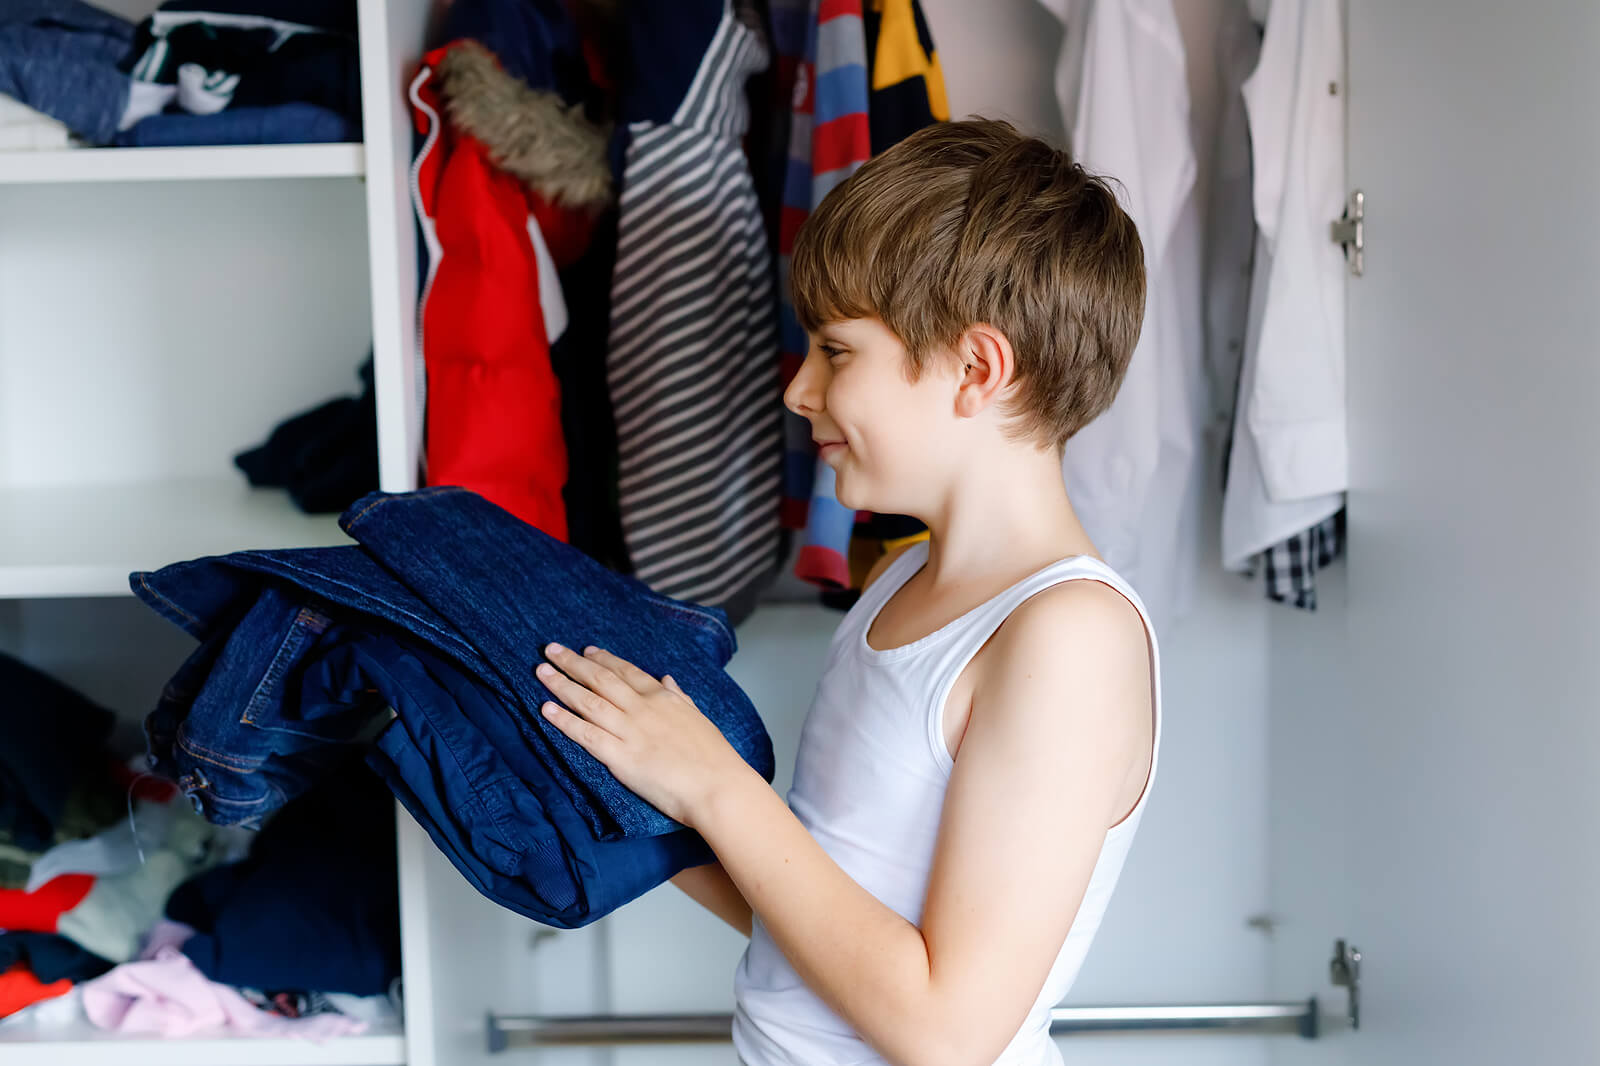 Bambino che organizza i vestiti nel suo armadio.